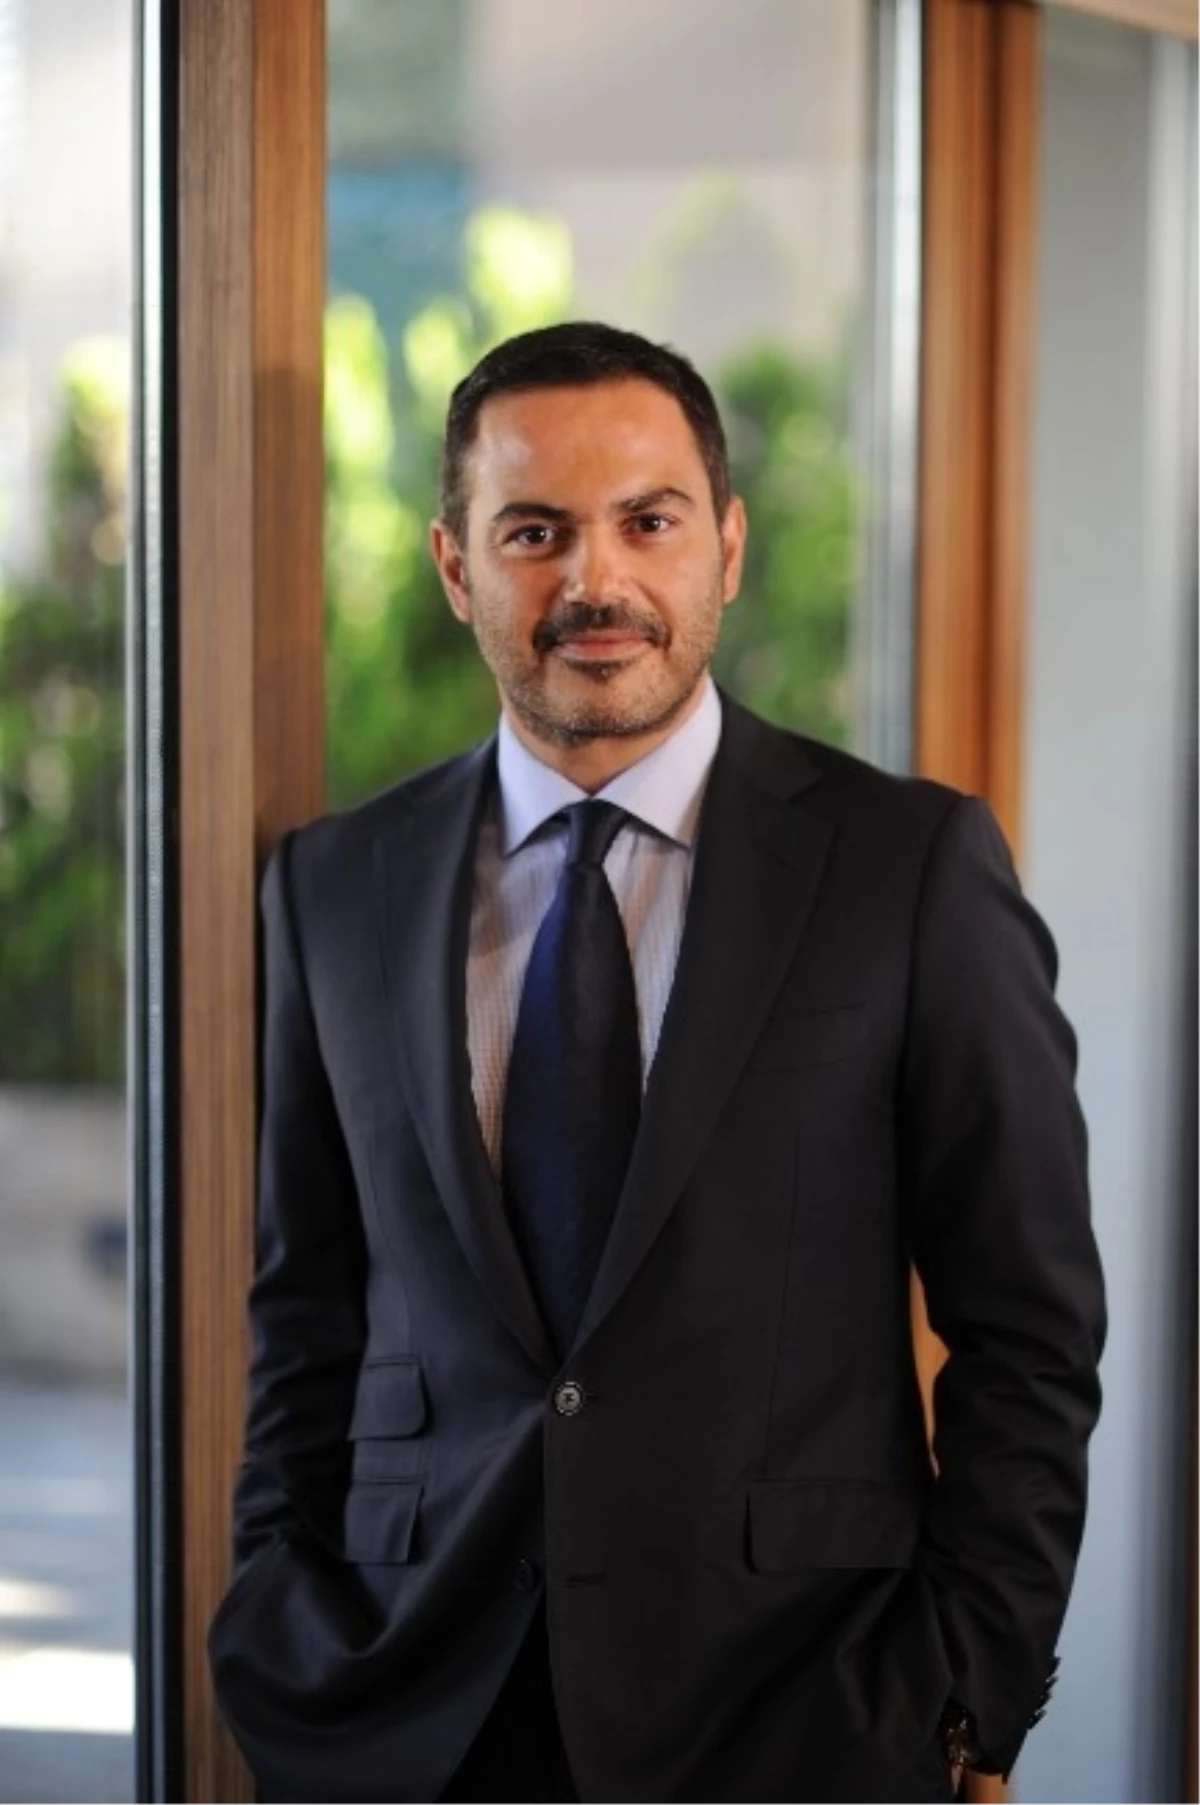 Aktifbank Genel Müdürü Halisdemir: "Cebıt\'i Önemli Bir Platform Olarak Görüyoruz"